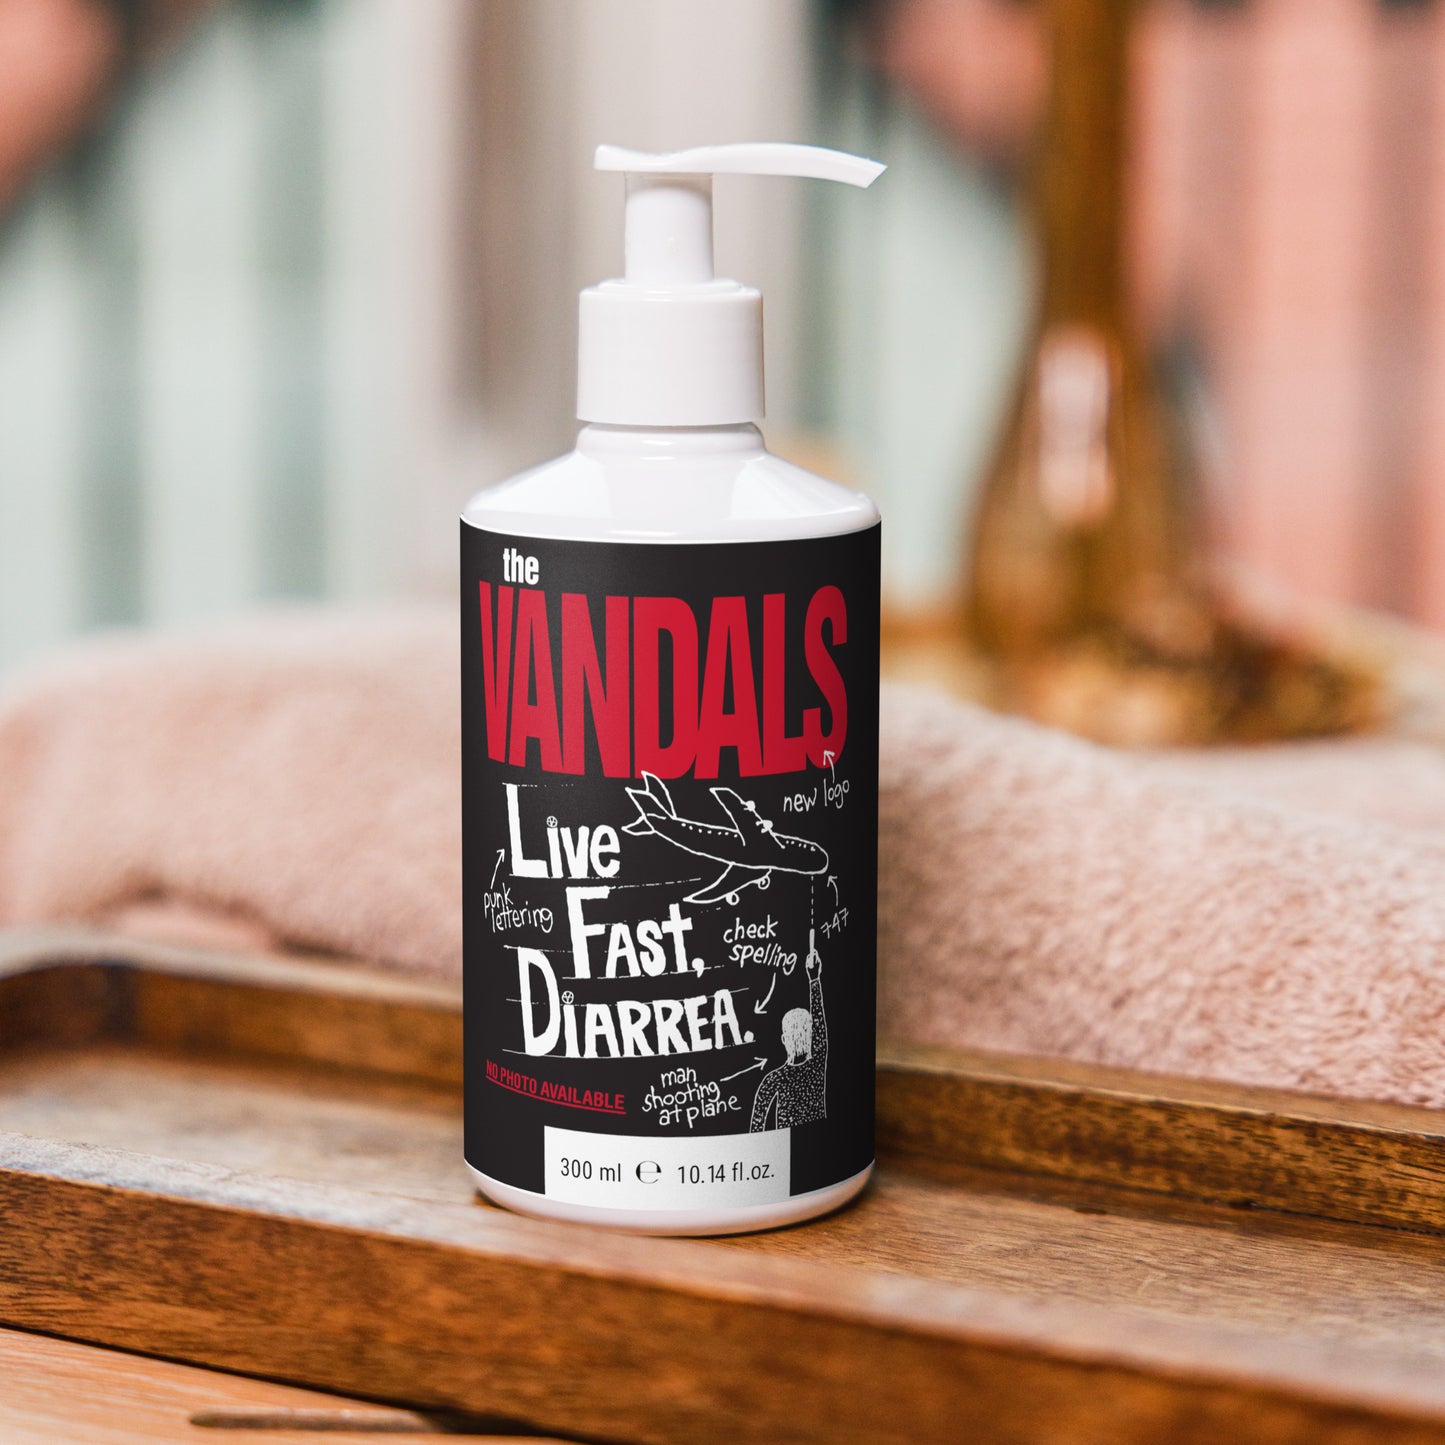 Vandals refreshing Hand & Body Wash